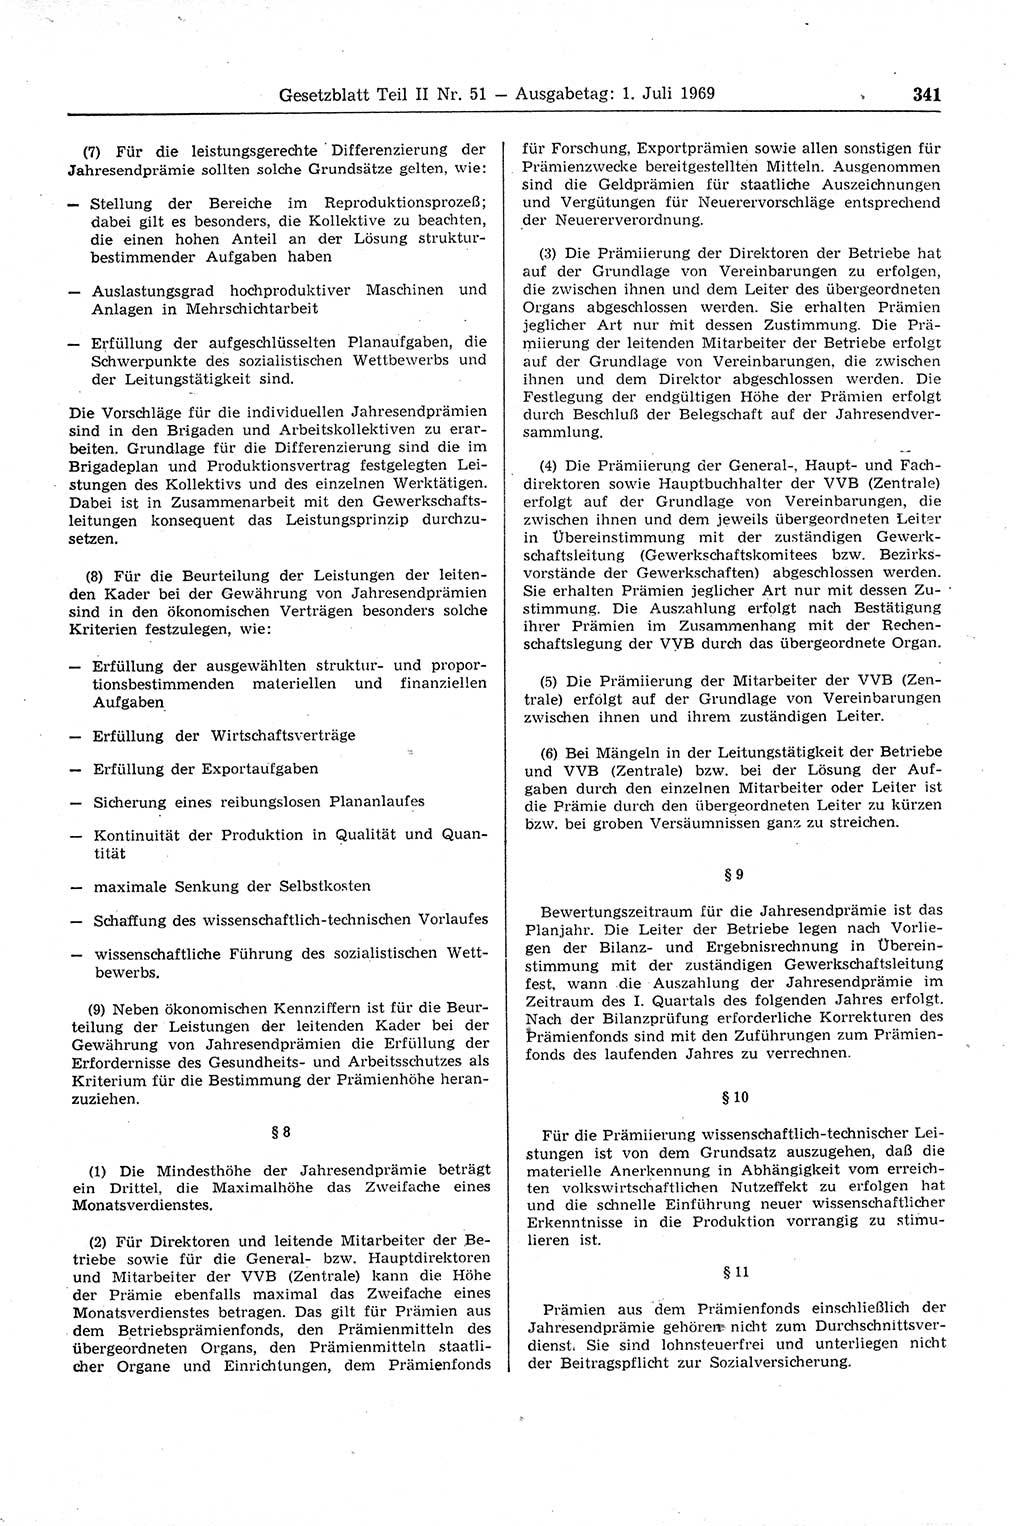 Gesetzblatt (GBl.) der Deutschen Demokratischen Republik (DDR) Teil ⅠⅠ 1969, Seite 341 (GBl. DDR ⅠⅠ 1969, S. 341)